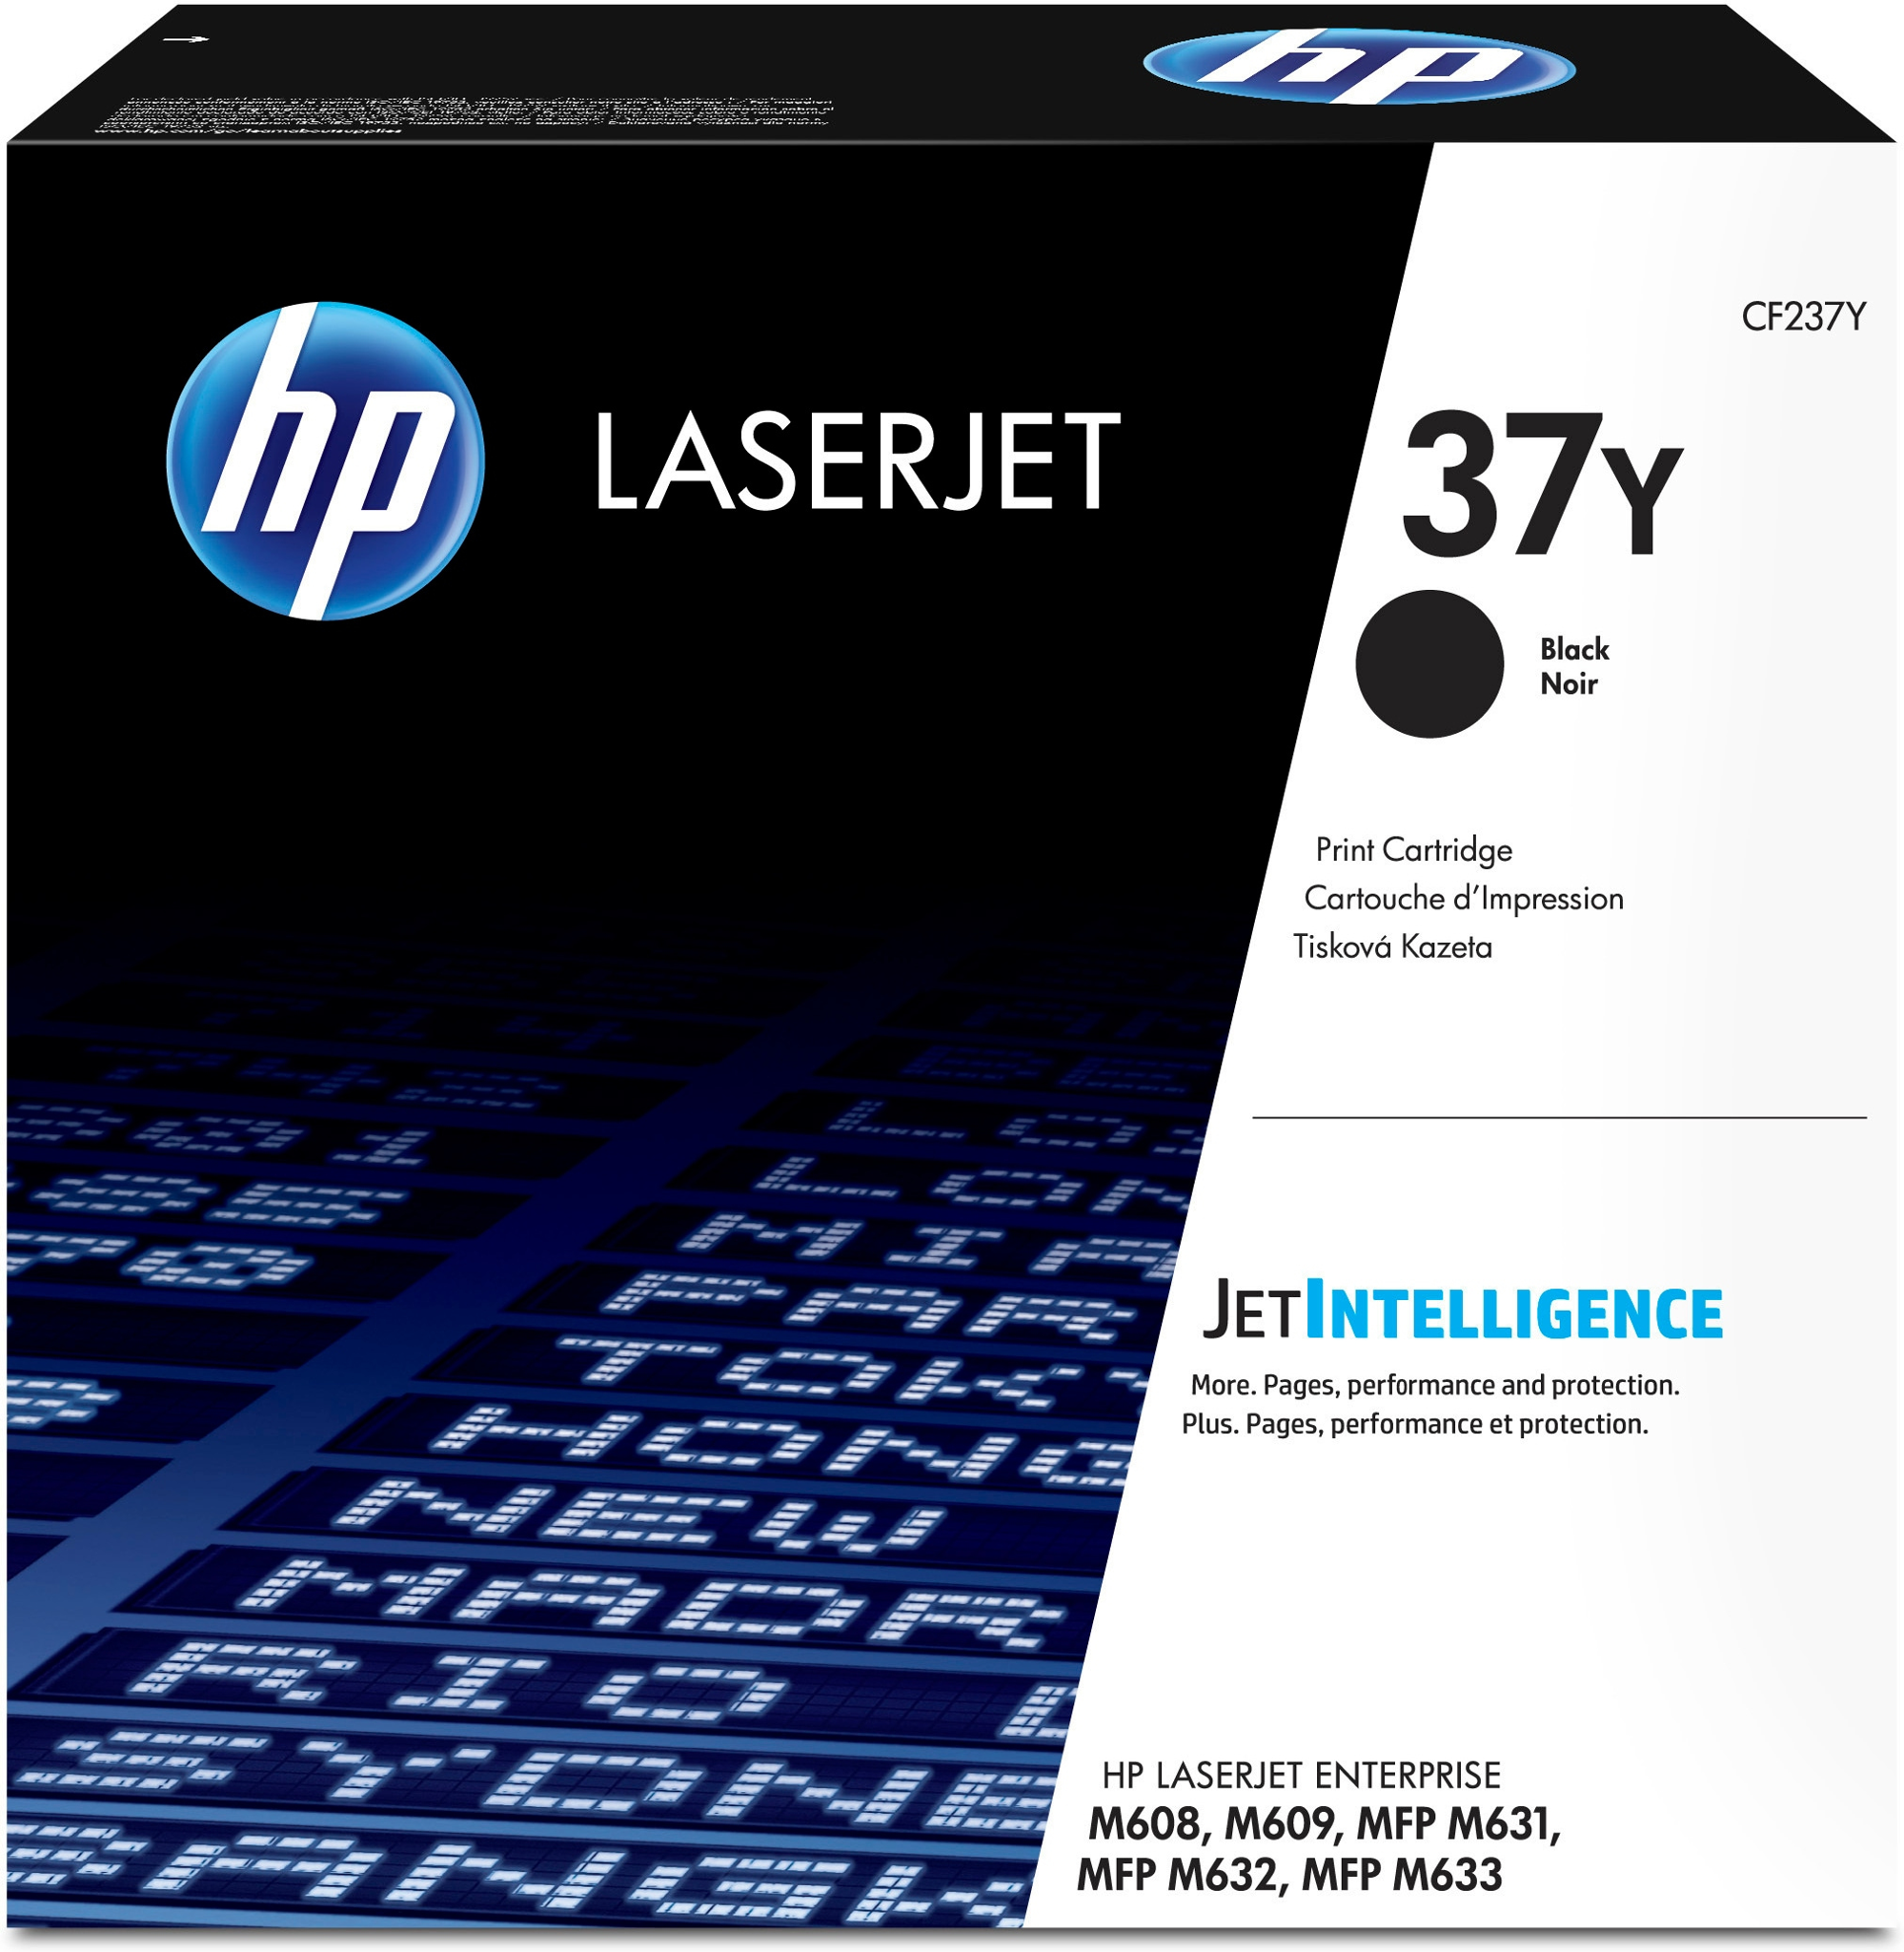 Bild von HP LaserJet 37Y - Tonereinheit Original - Schwarz - 41.000 Seiten